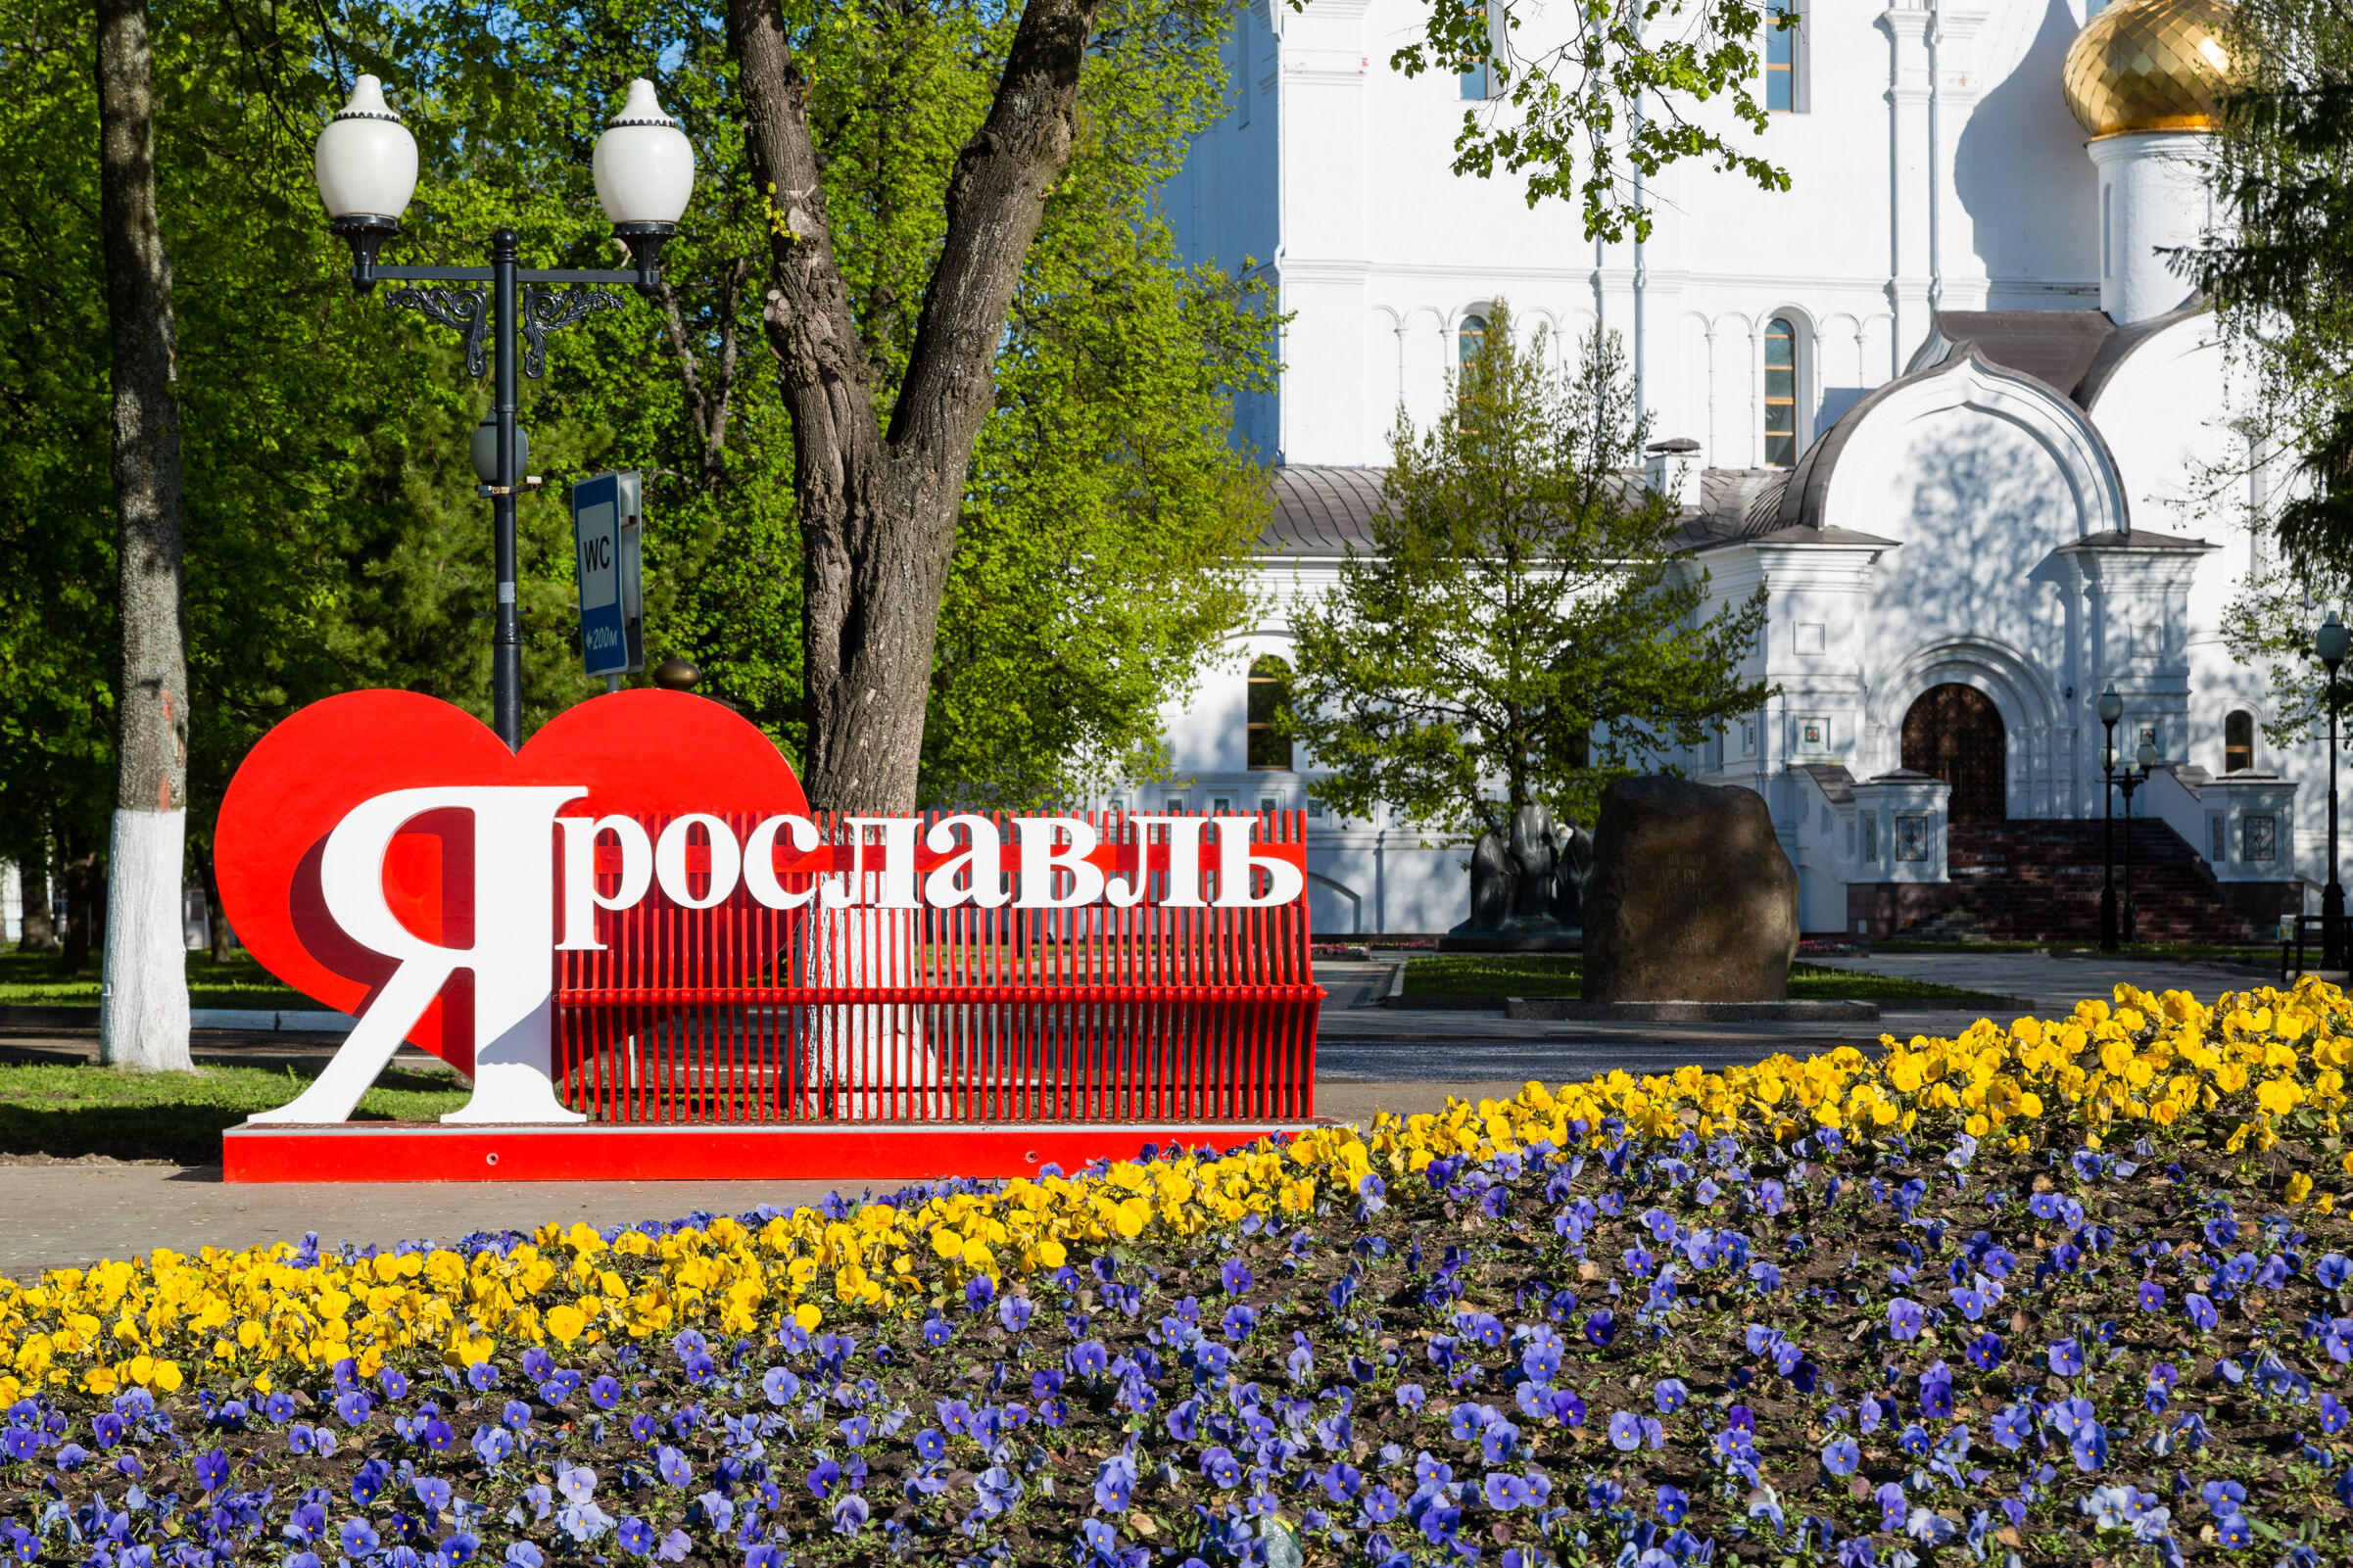 Ярославль вошел в топ-10 популярных весенних маршрутов